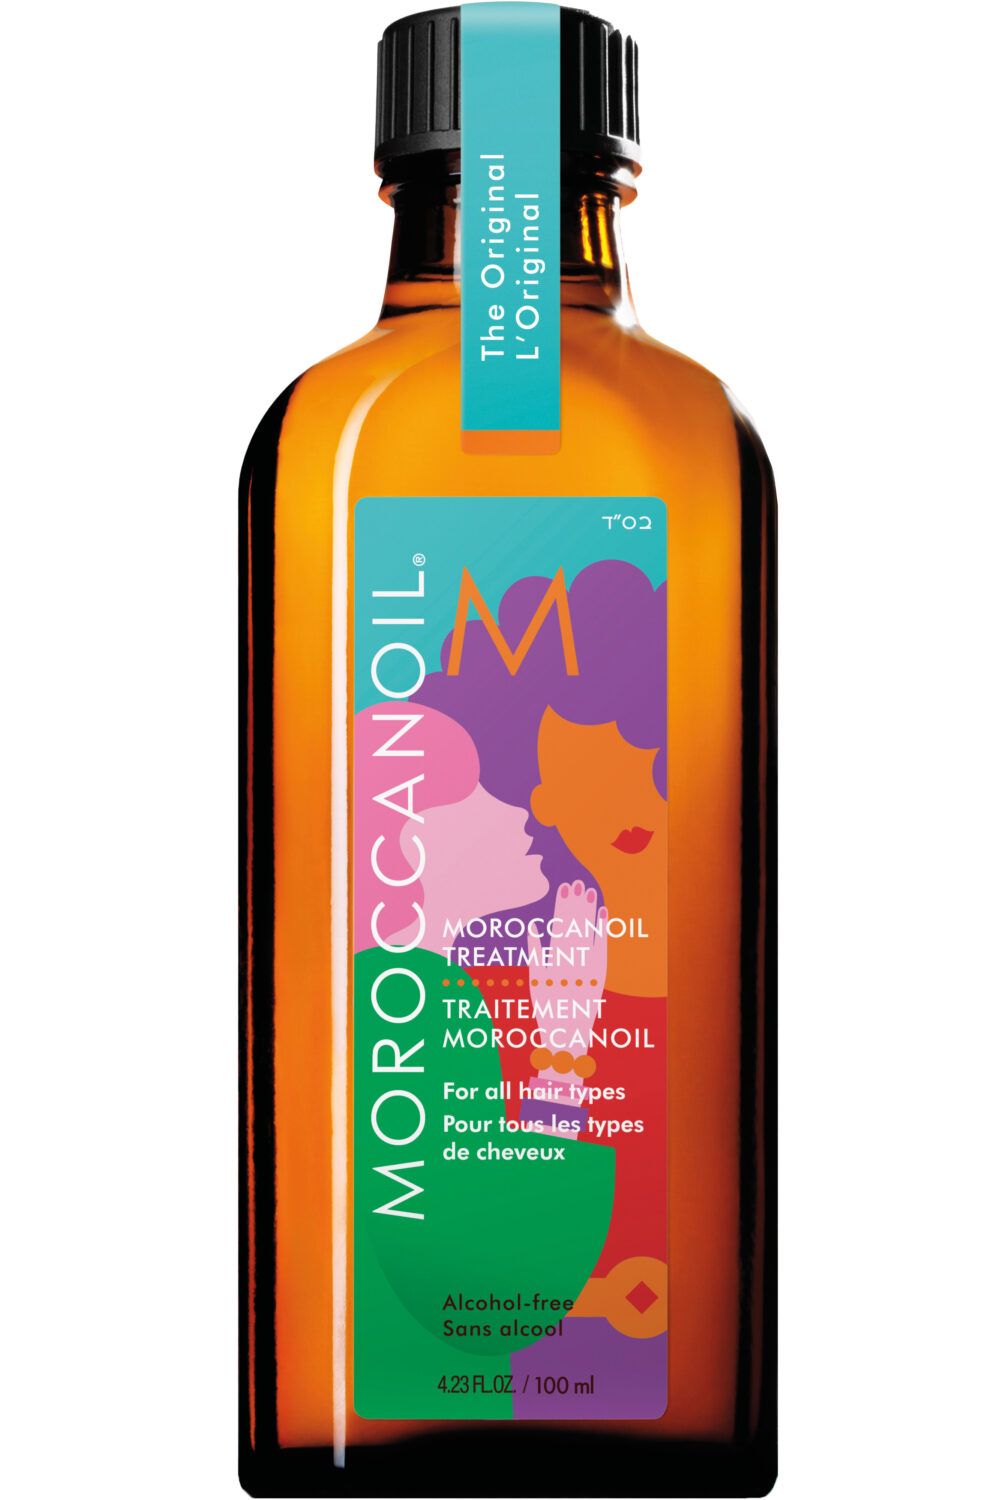 Moroccanoil - Soin huile Moroccanoil L'Original édition spéciale